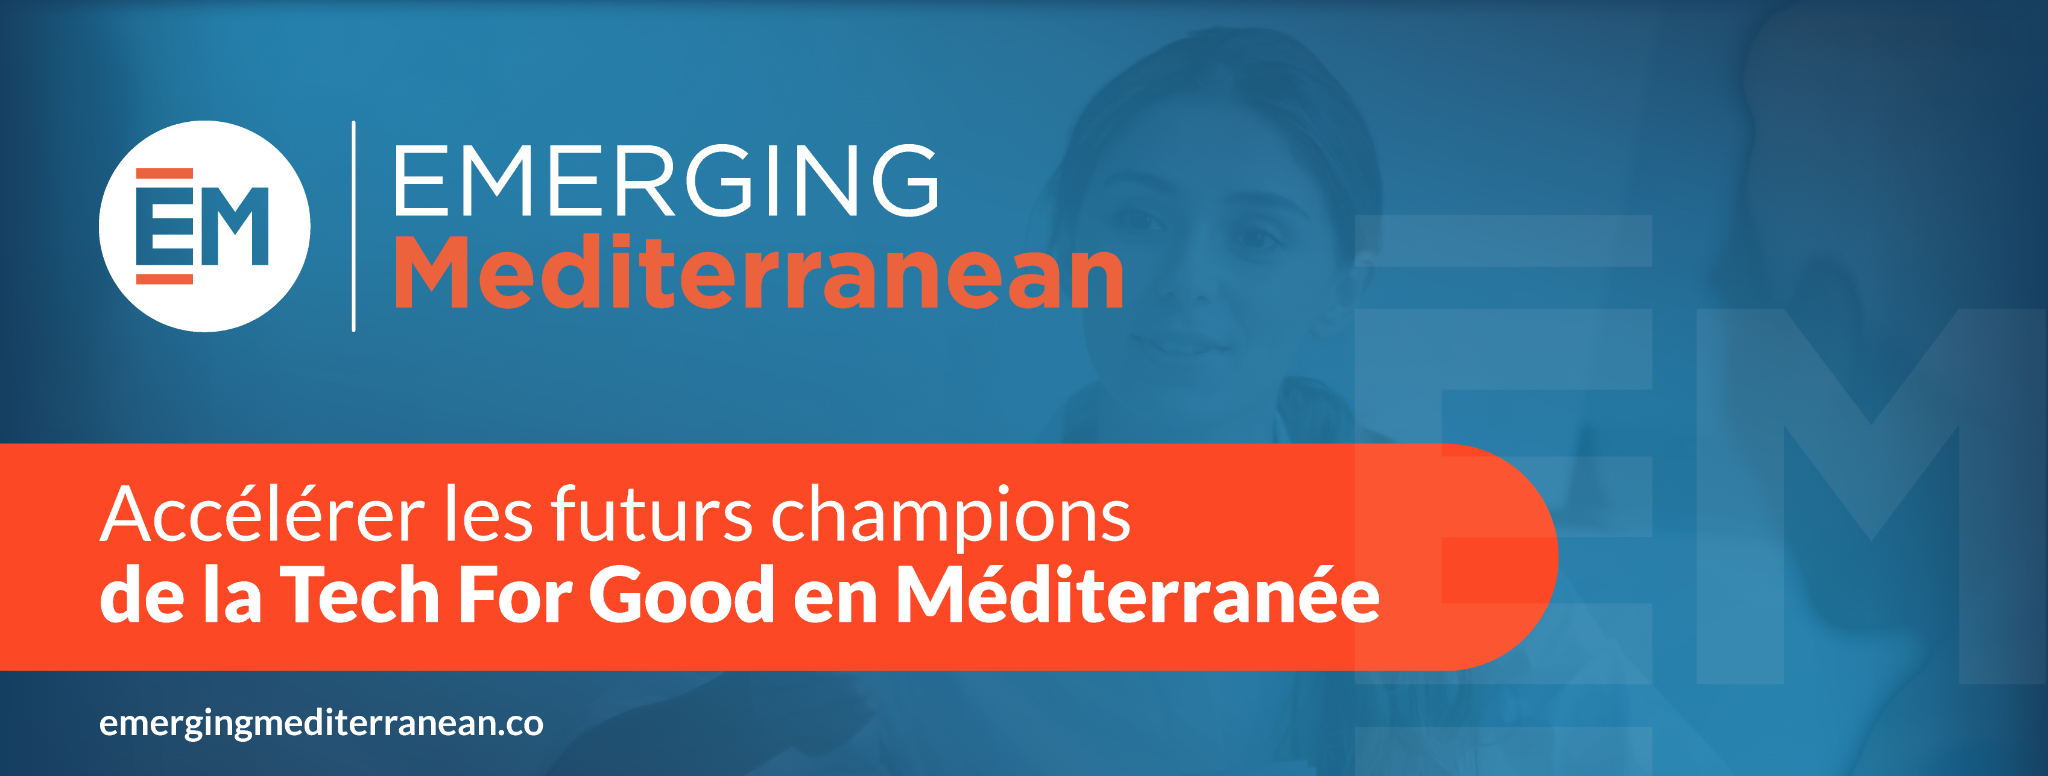 Rendez-vous du 9 au 11 juillet 2021 pour le Bootcamp des 2 Rives, 3 jours inspirants à destination de l’écosystème Tech et entrepreneurial méditerranéen